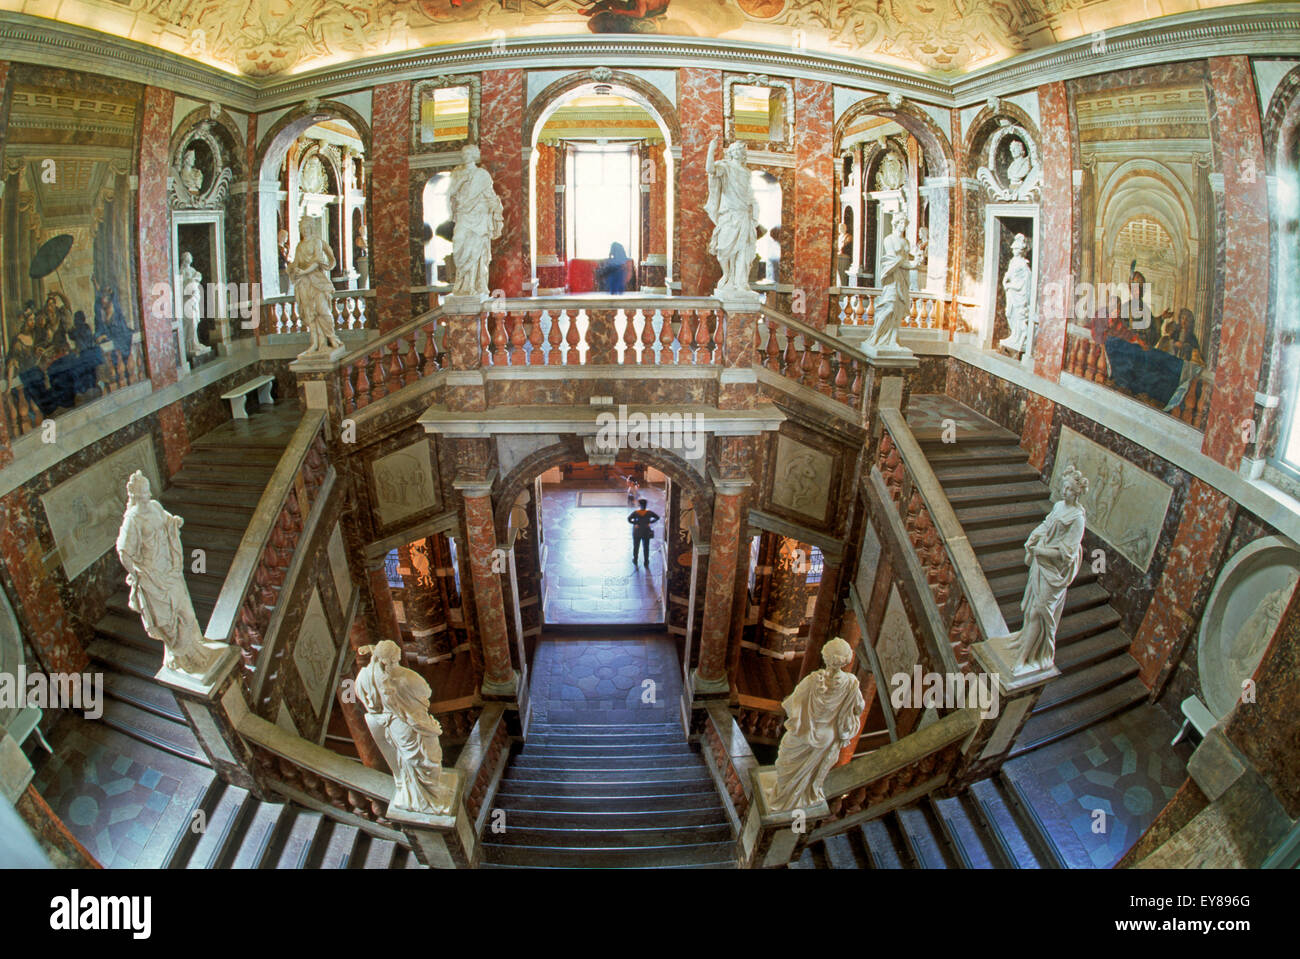 Décorations intérieures à Drottningholm Baroque Château près de Stockholm, en Suède, la résidence de la famille royale sur le lac Mälaren Banque D'Images